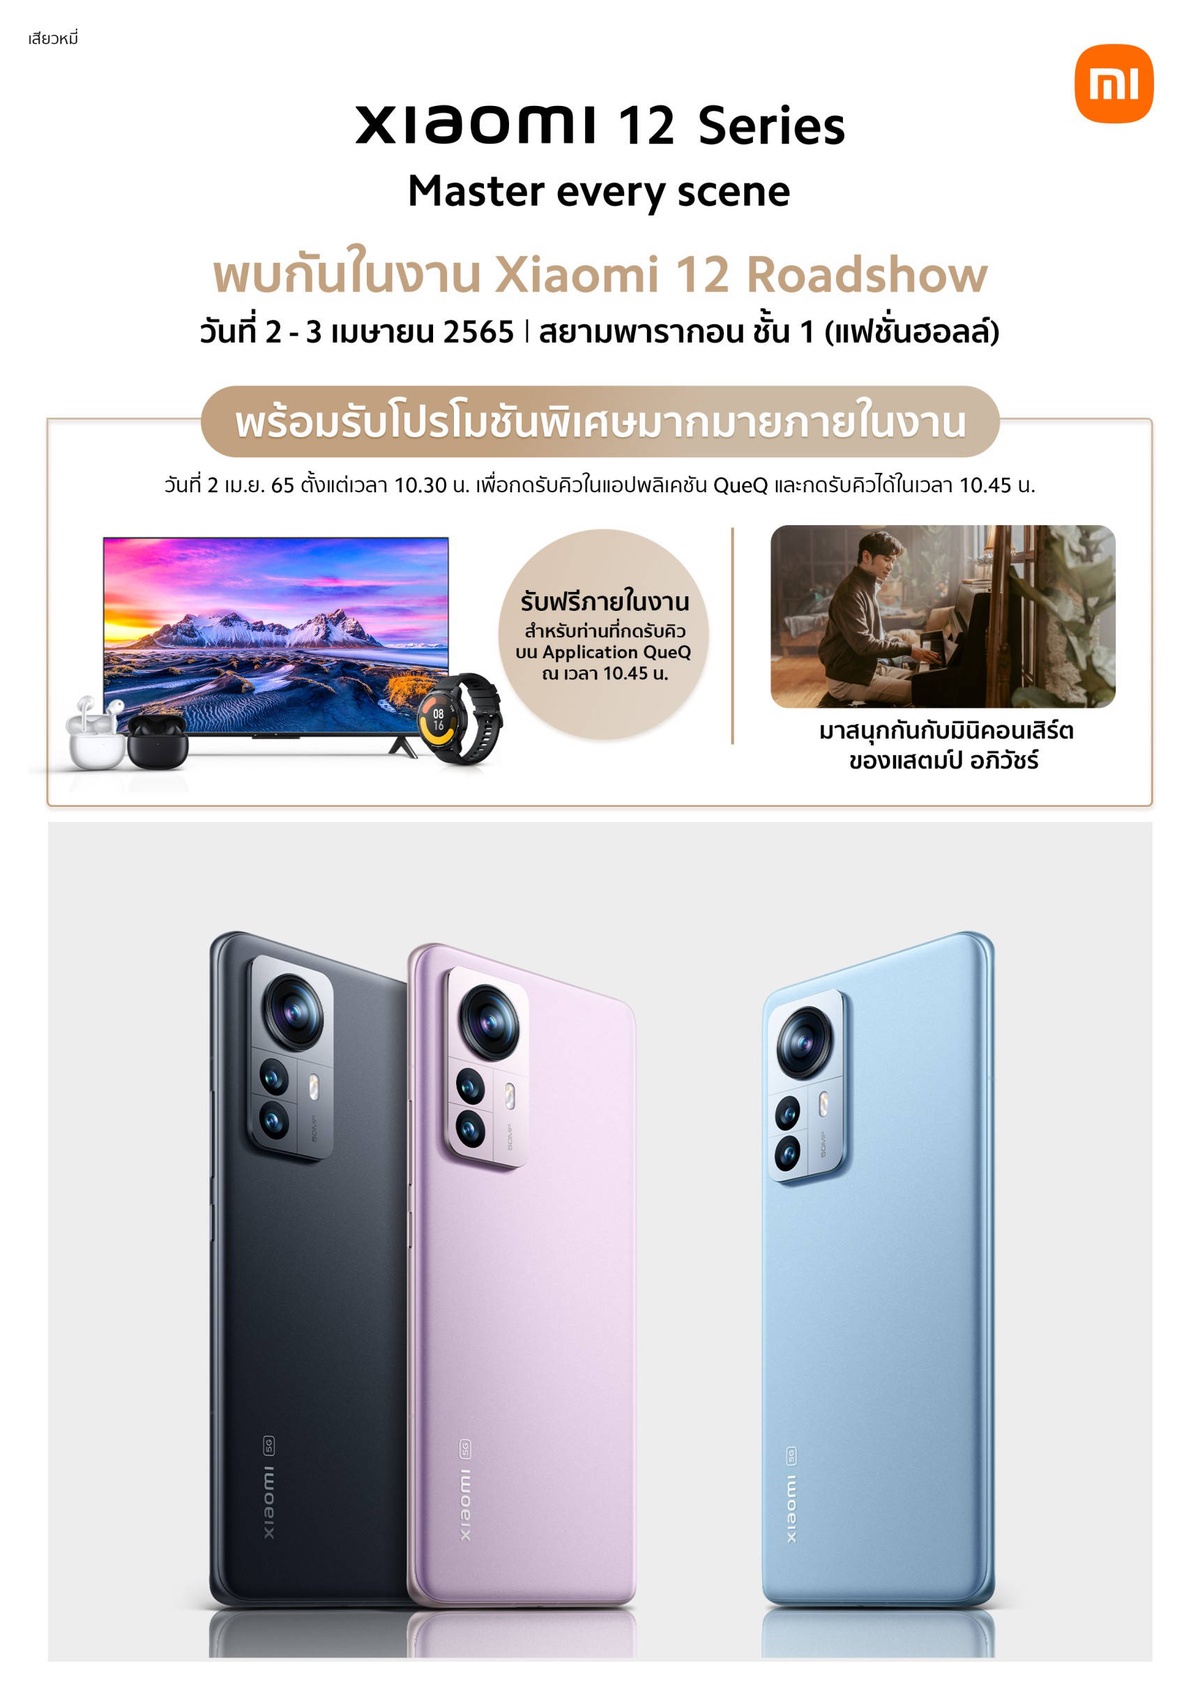 เสียวหมี่เตรียมจัดงาน Xiaomi 12 Roadshow ในวันที่ 2-3 เม.ย. นี้ ณ ศูนย์การค้าสยามพารากอน โอกาสสุดท้ายของลูกค้า Xiaomi 12 Pro และ Xiaomi 12 สำหรับการรับของขวัญสุดพิเศษ!